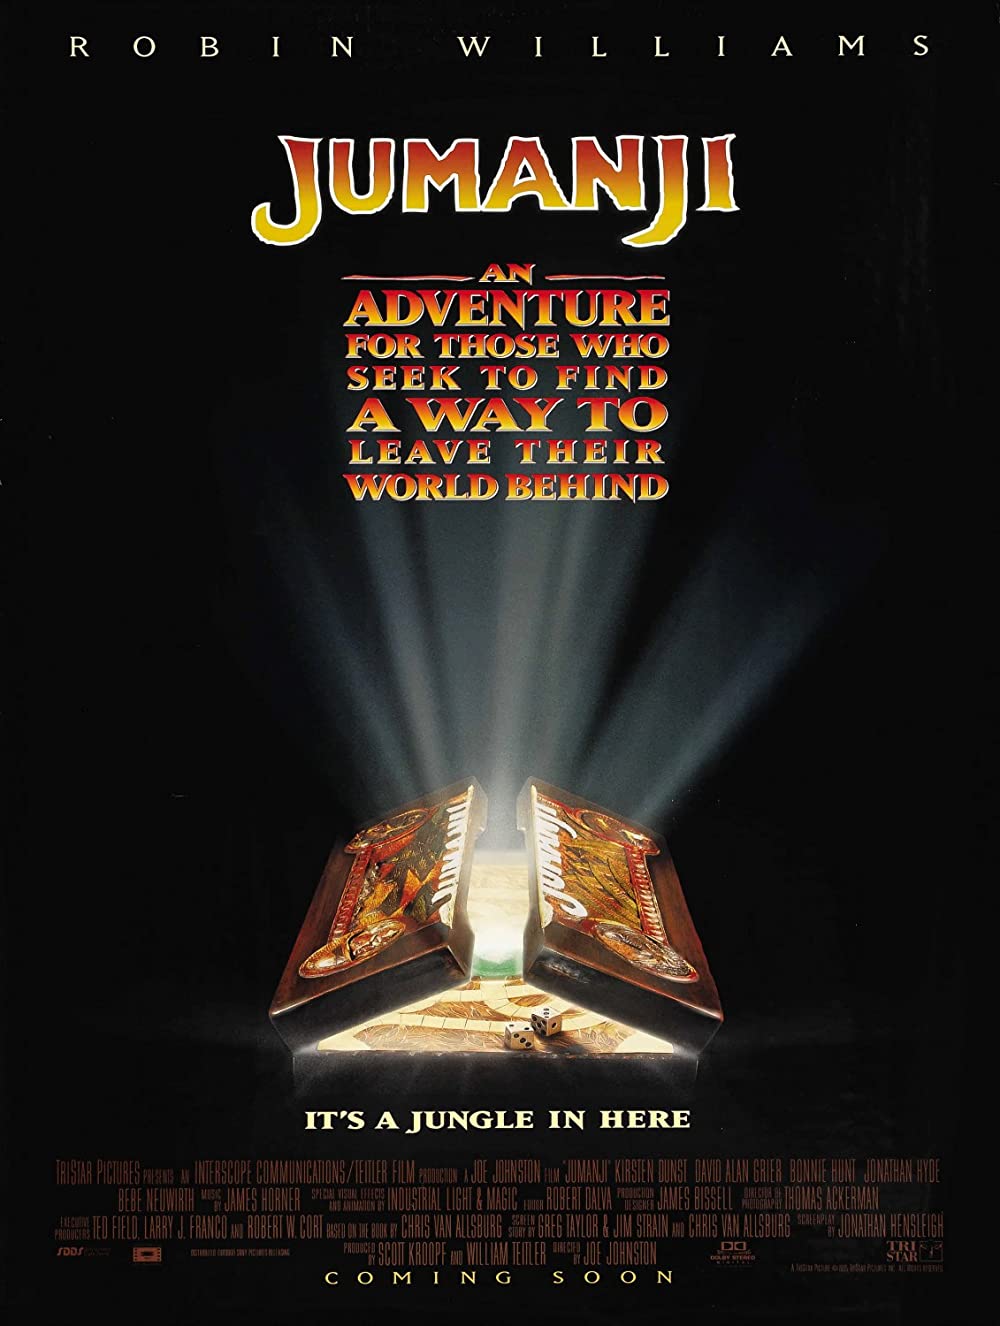 Filmbeschreibung zu Jumanji (1995)